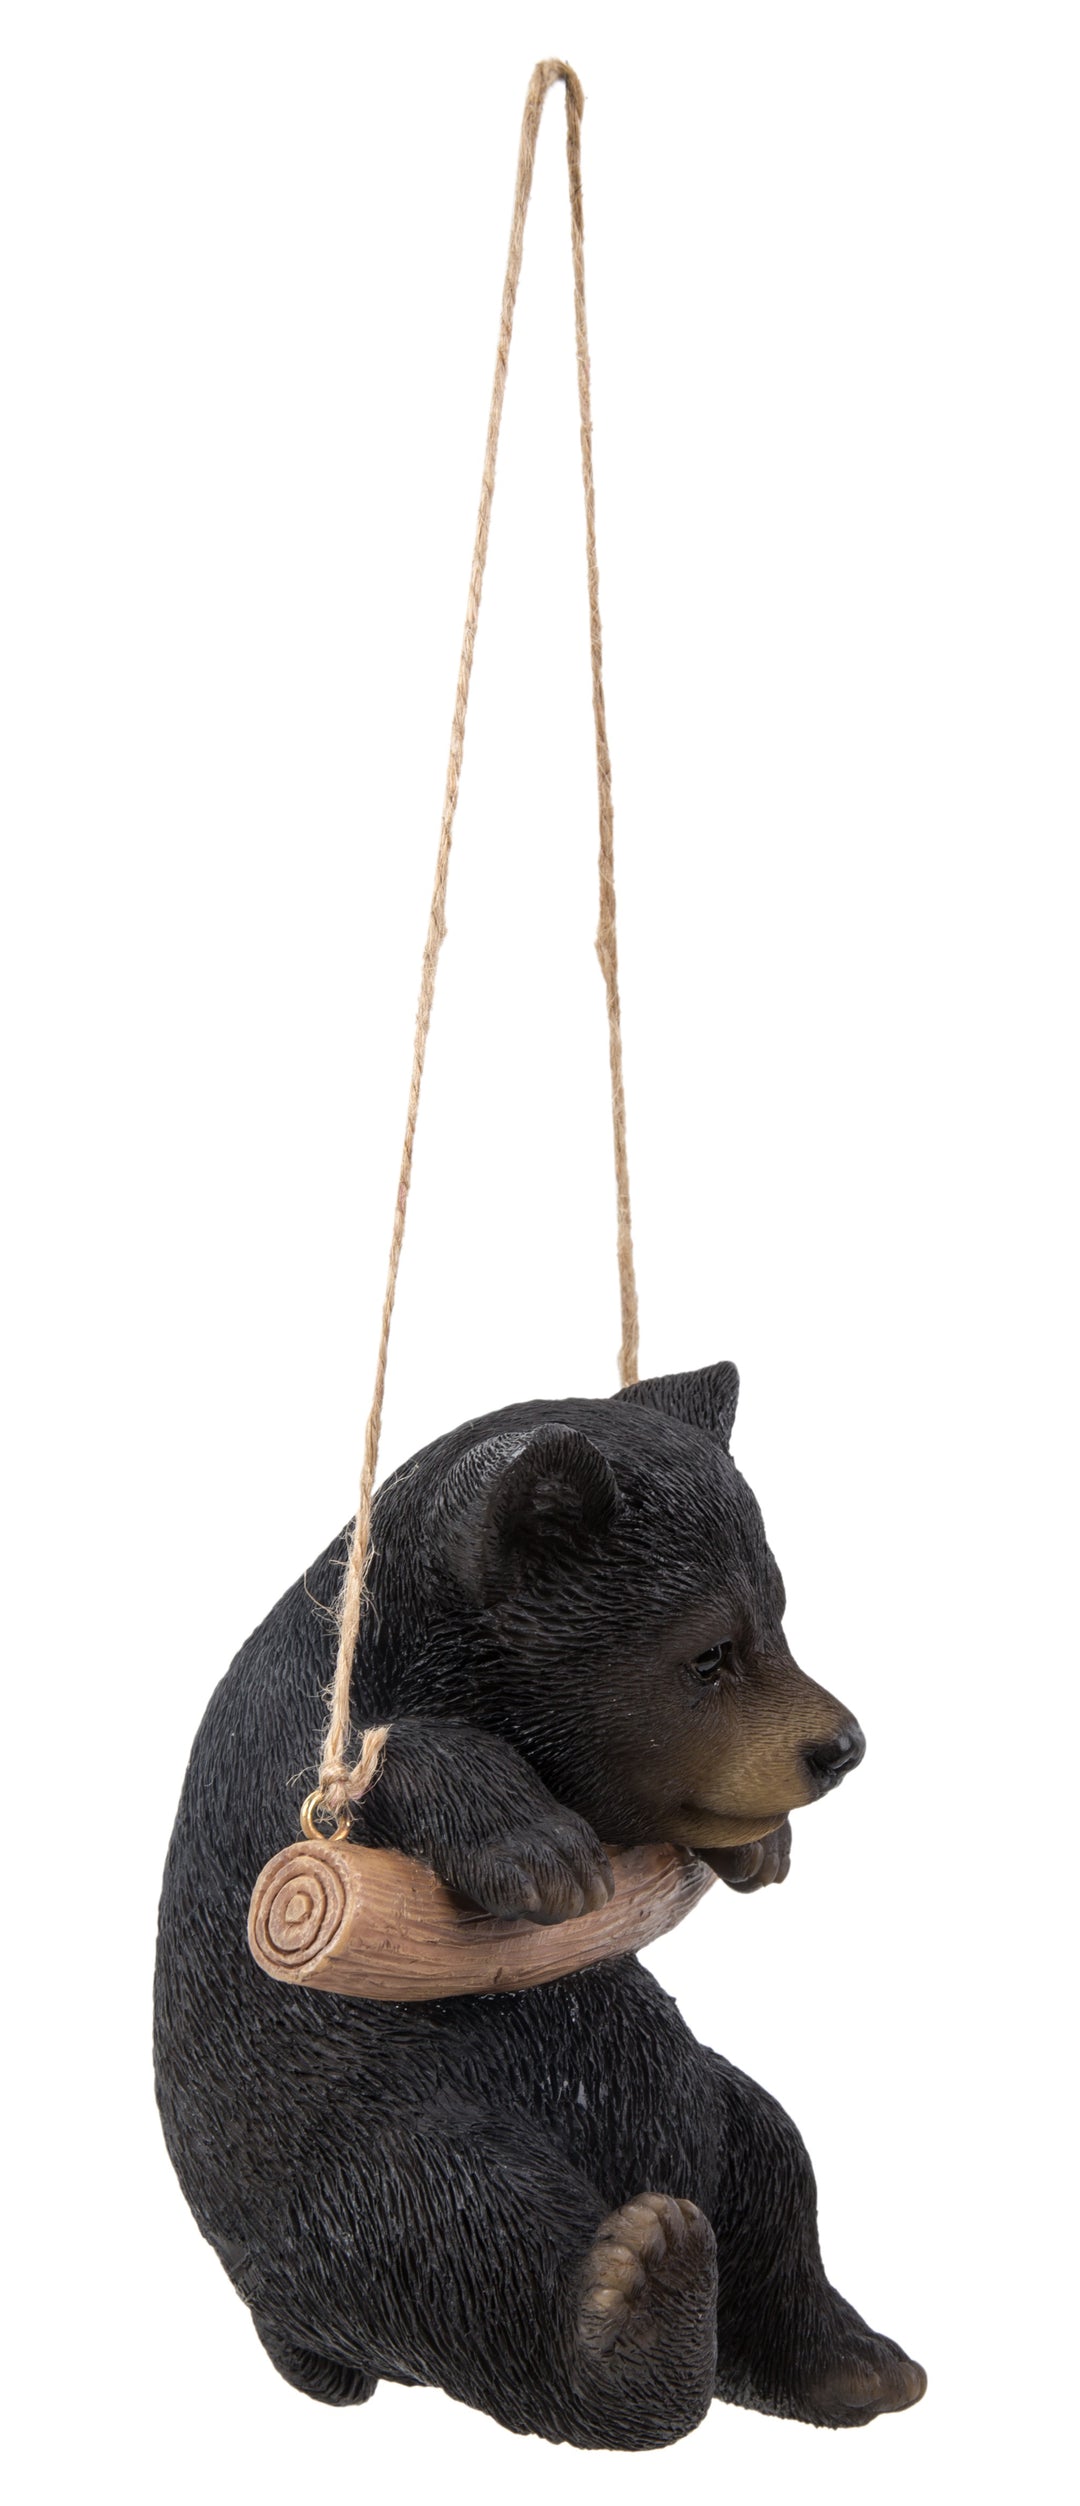 Hanging Black Bear Hug Branch HI-LINE GIFT LTD.